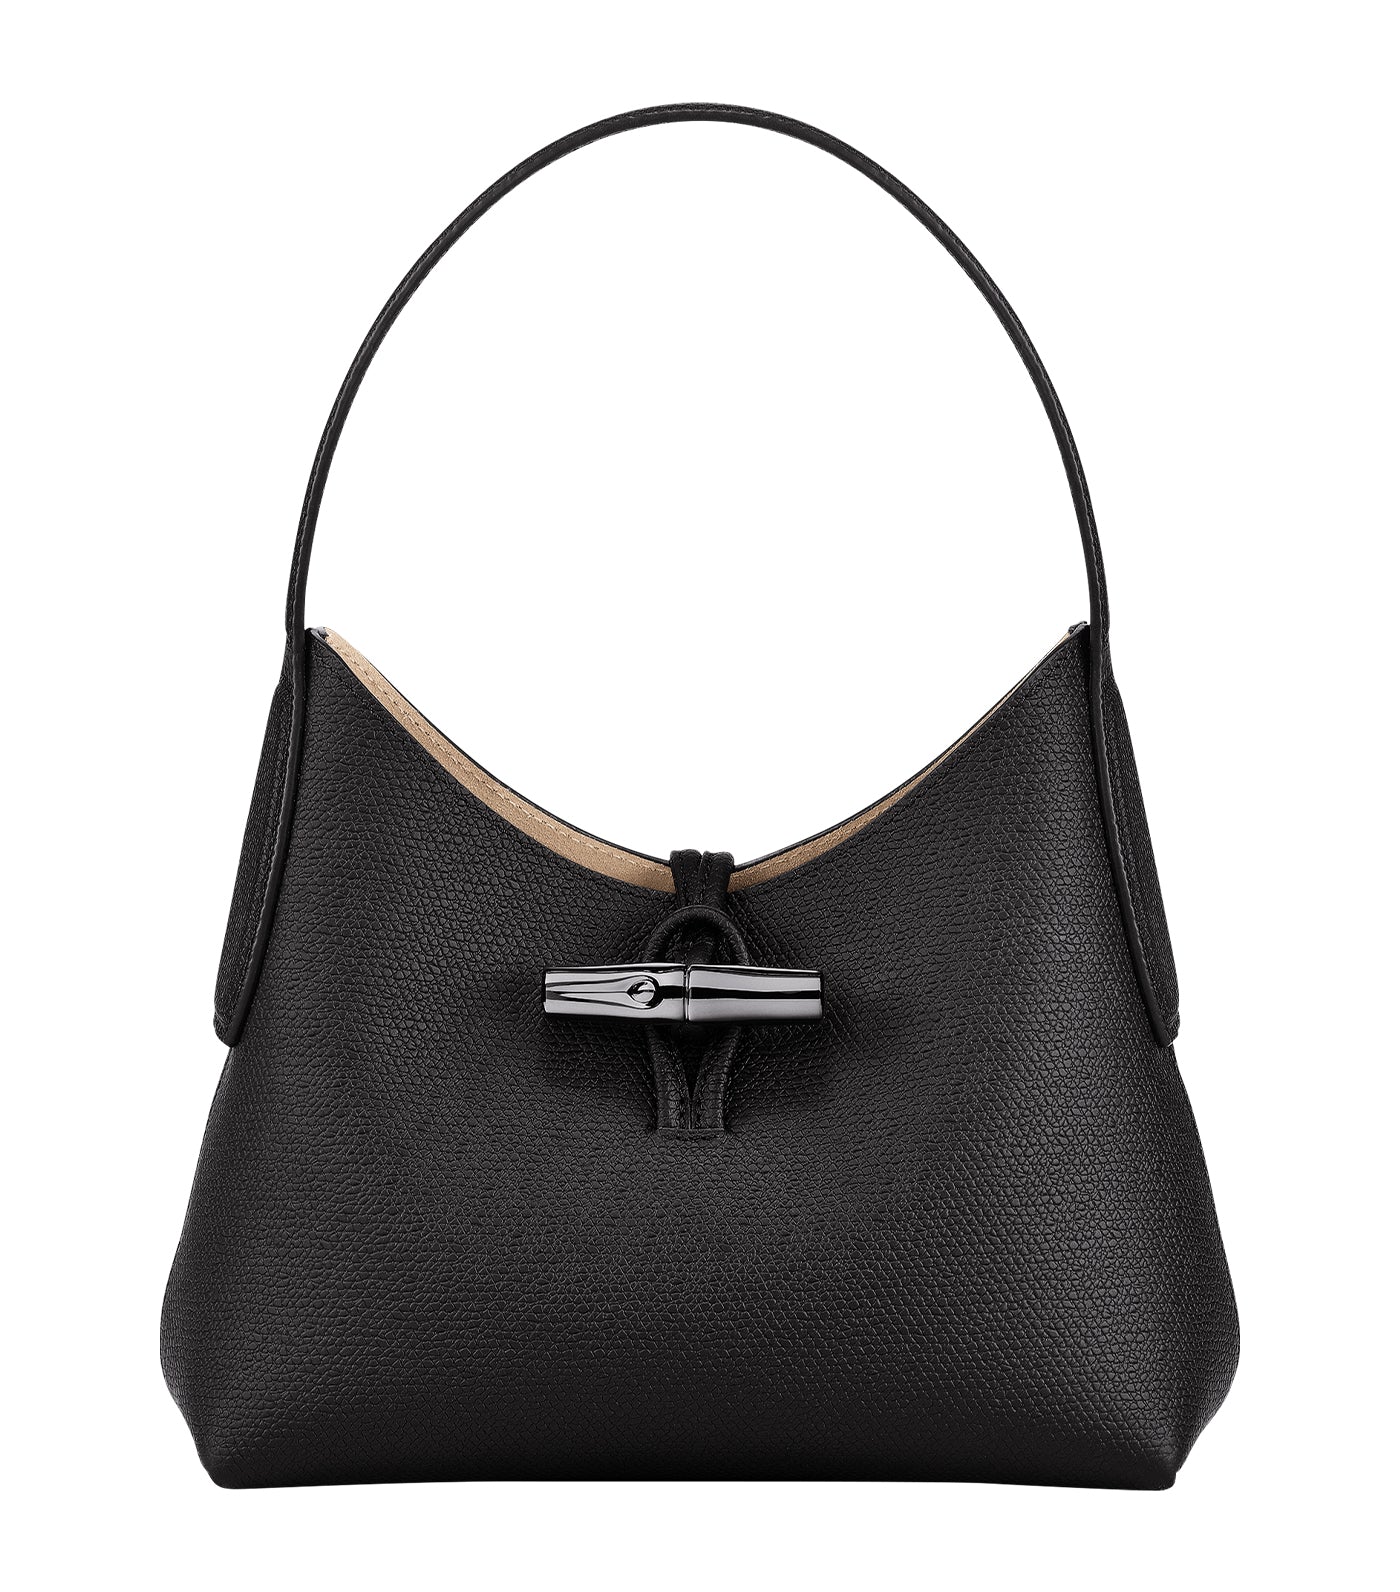 Vintage Longchamp Roseau Leather Shoulder Bag Black Made in 